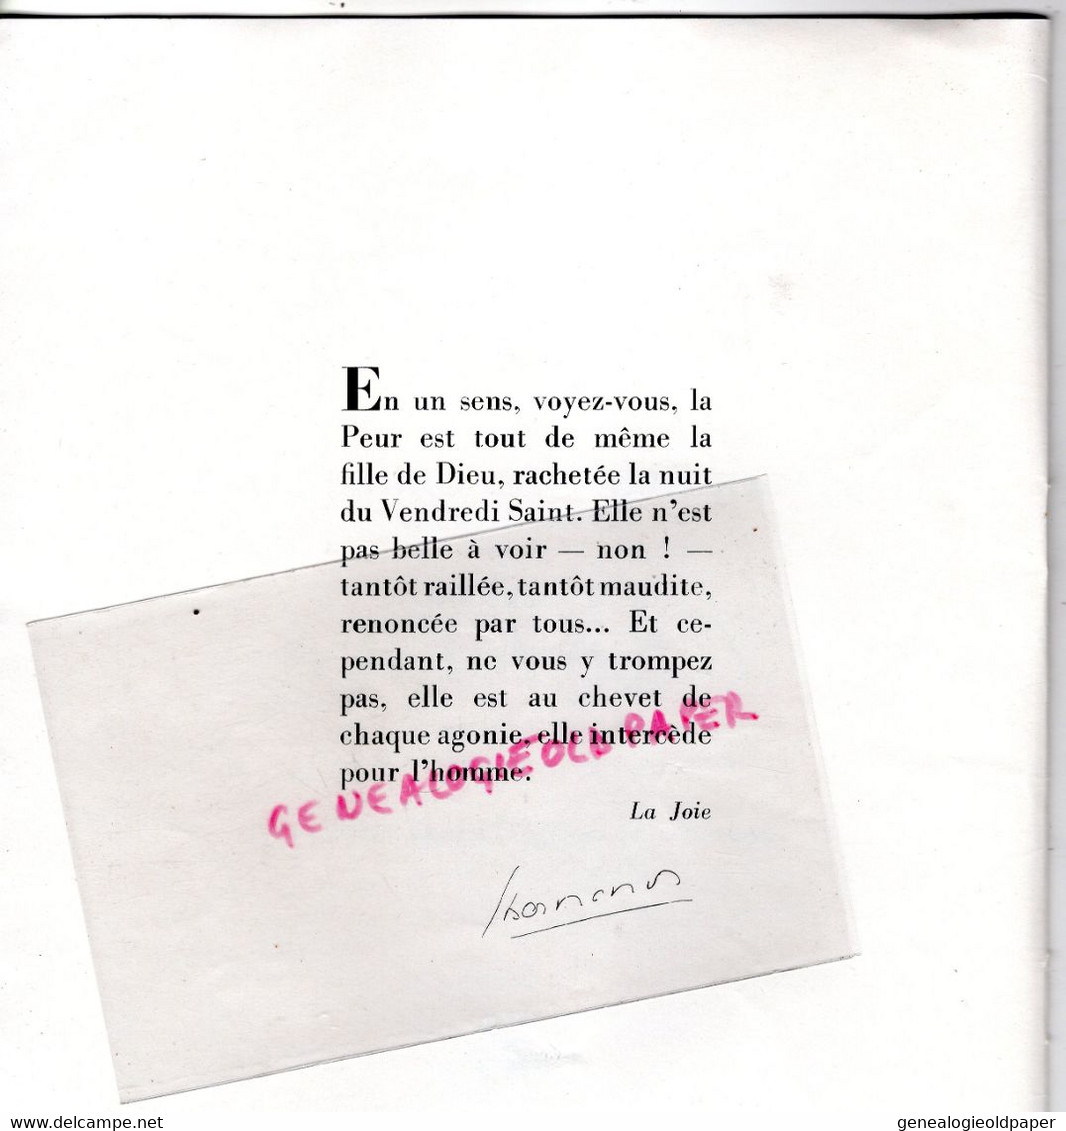 75- PARIS- PROGRAMME DIALOGUES DES CARMELITES-1957-ELYSEES PRODUCTIONS-BERNANOS-THEATRE HEBERTOT-JEAN DELAZ-COUSSOLE- - Programas